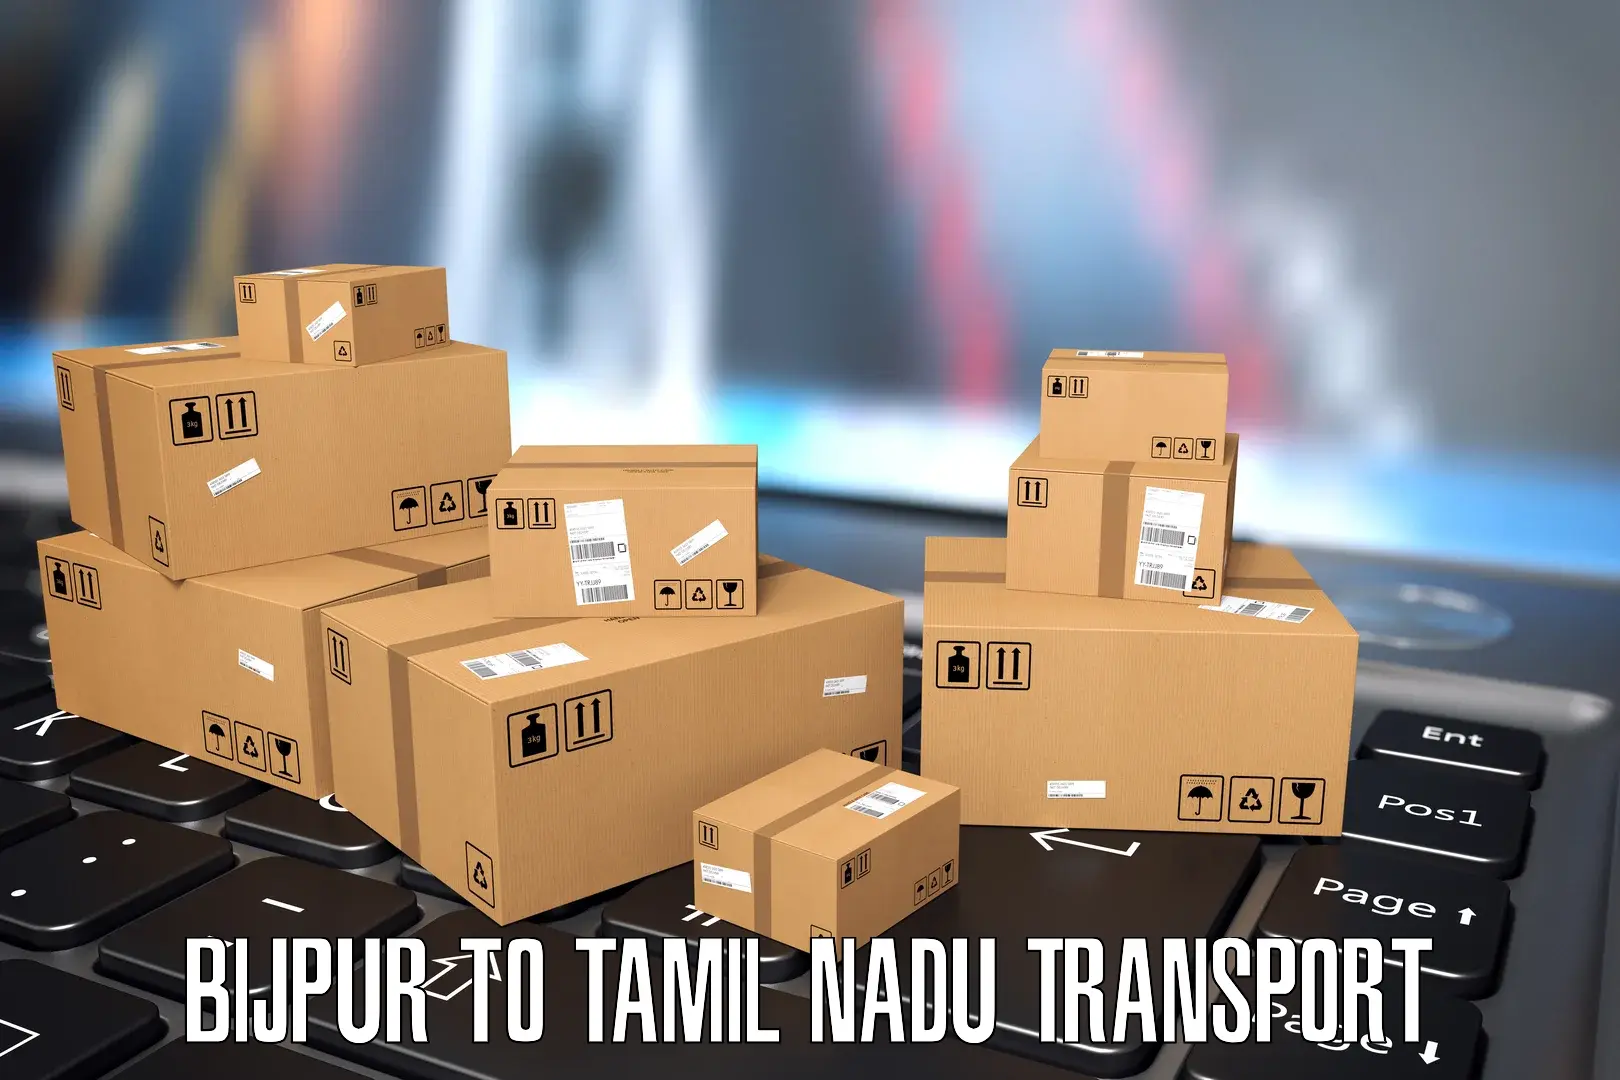 Luggage transport services Bijpur to Udagamandalam